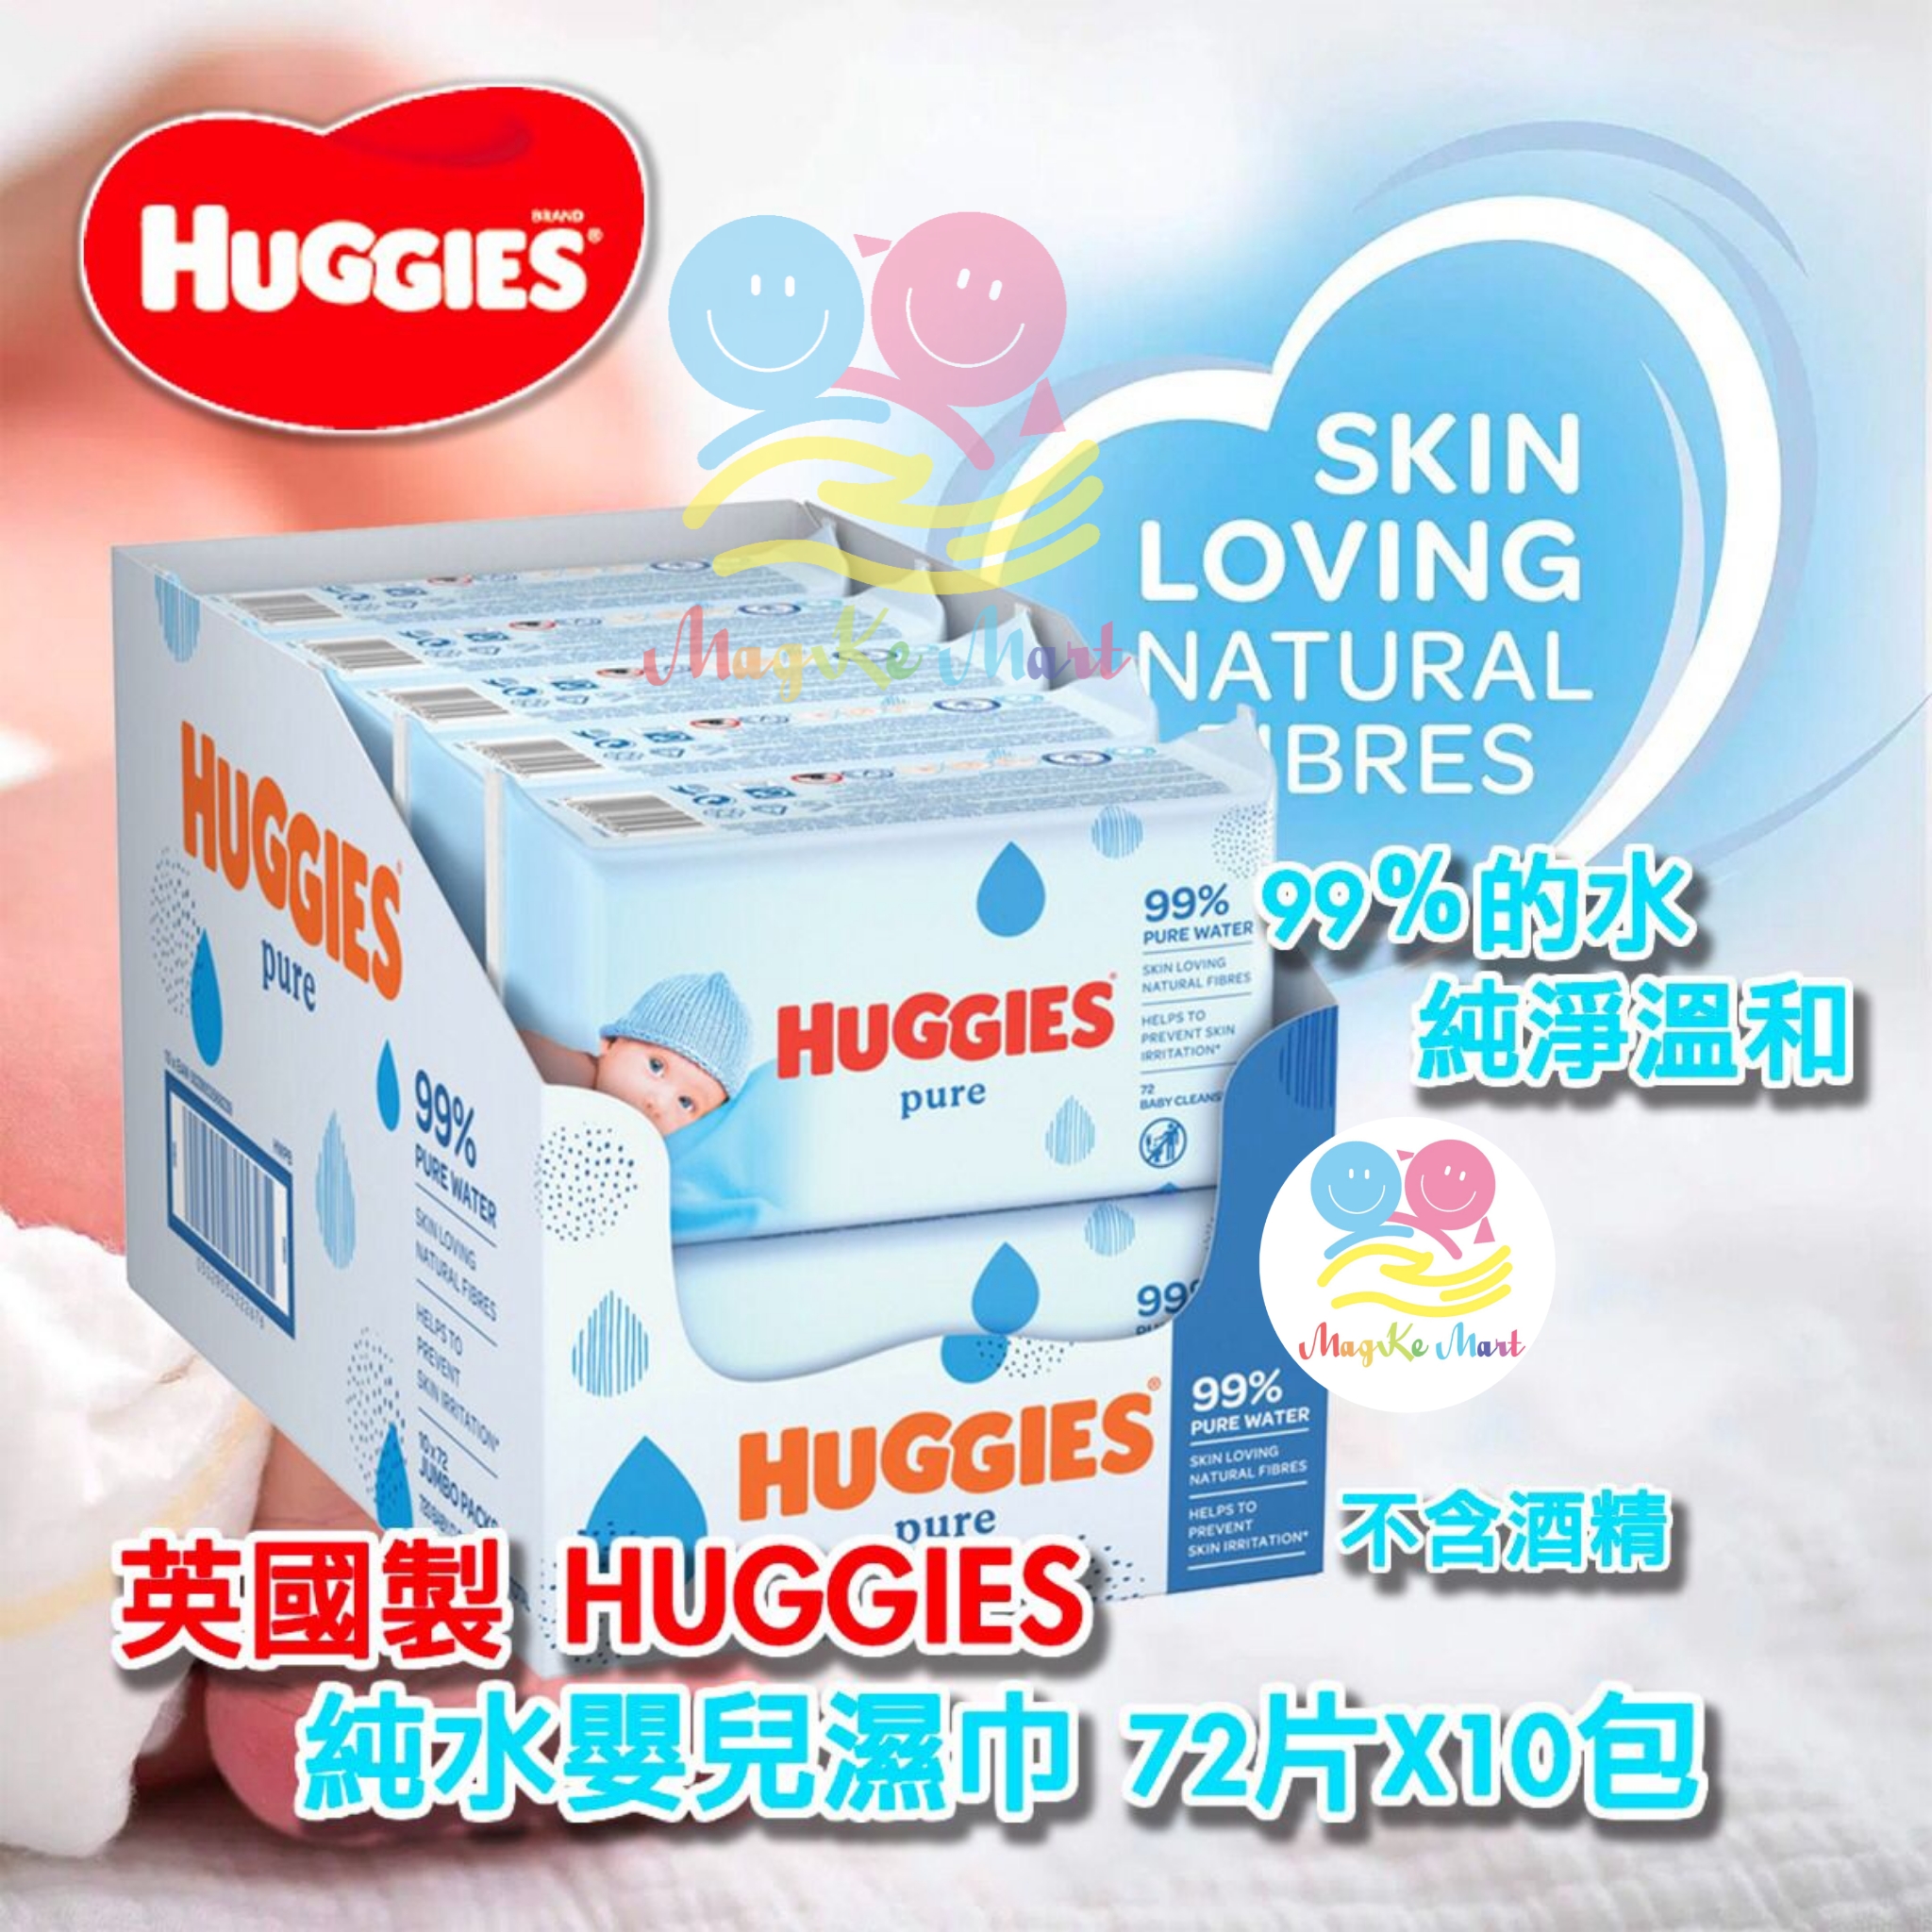 英國製 Huggies 純水嬰兒濕巾 (1箱10包)